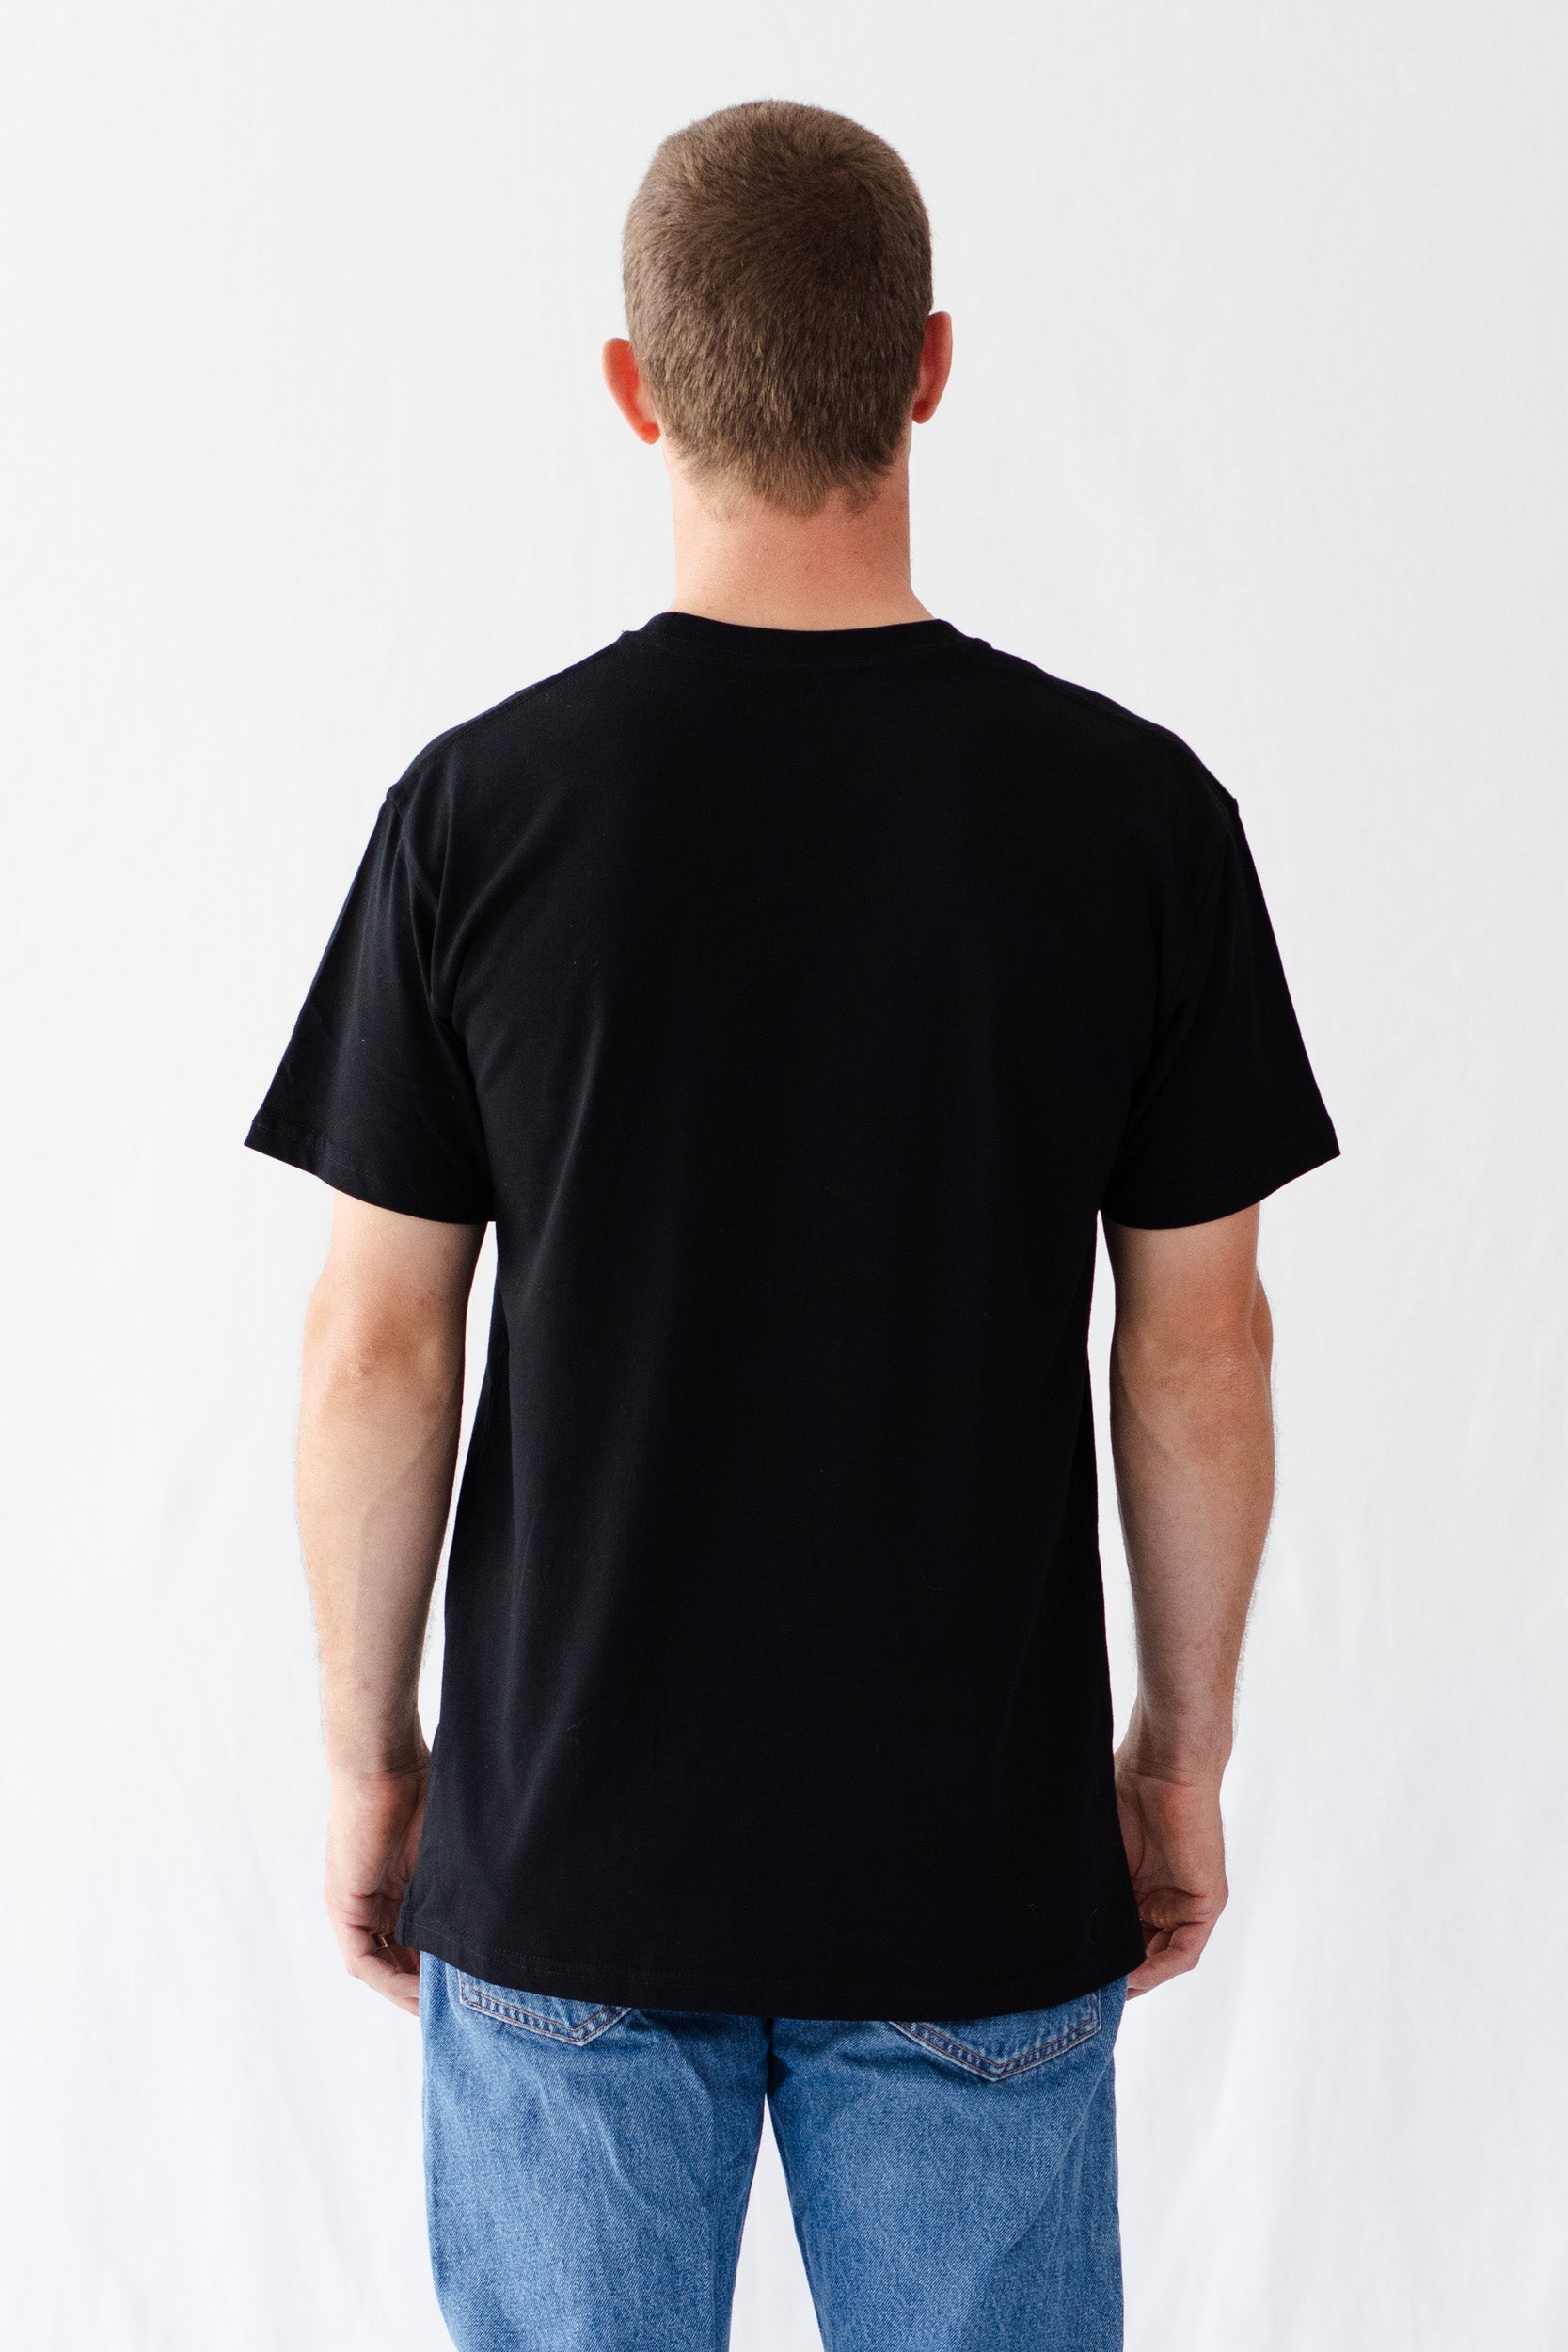 Camo Mens ENERGY T-Shirt - Black